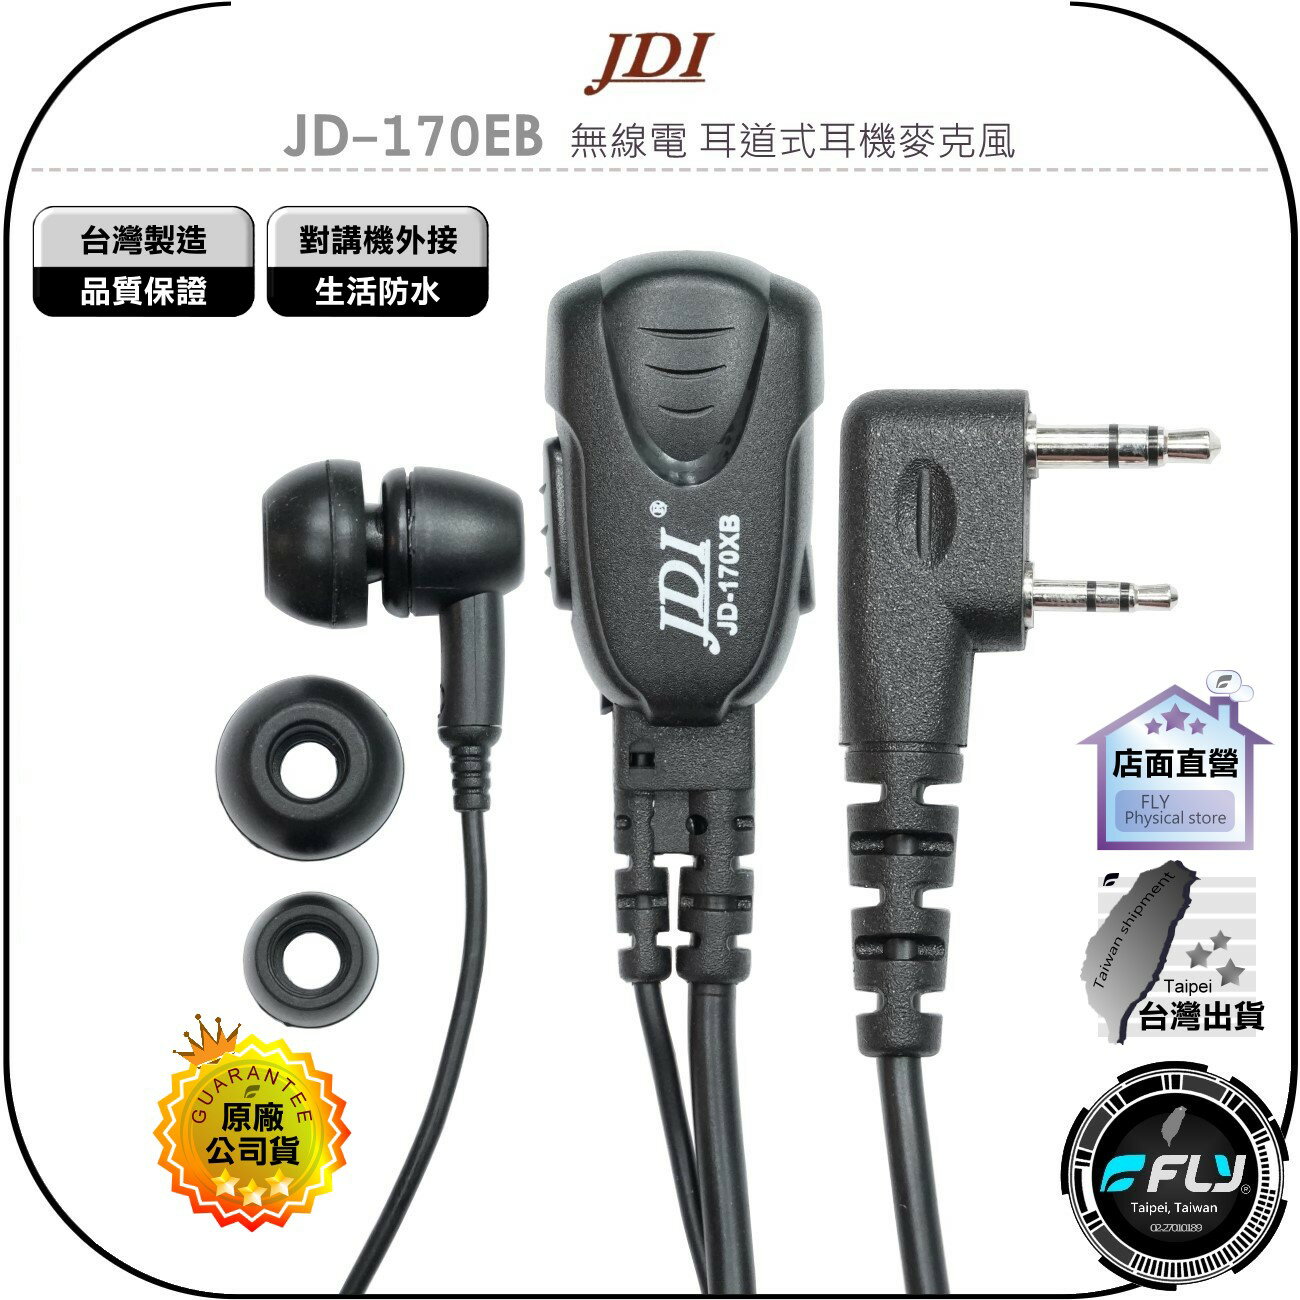 《飛翔無線3C》JDI JD-170EB 無線電 耳道式耳機麥克風◉公司貨◉台灣製造◉對講機收發◉手持機通話◉入耳型